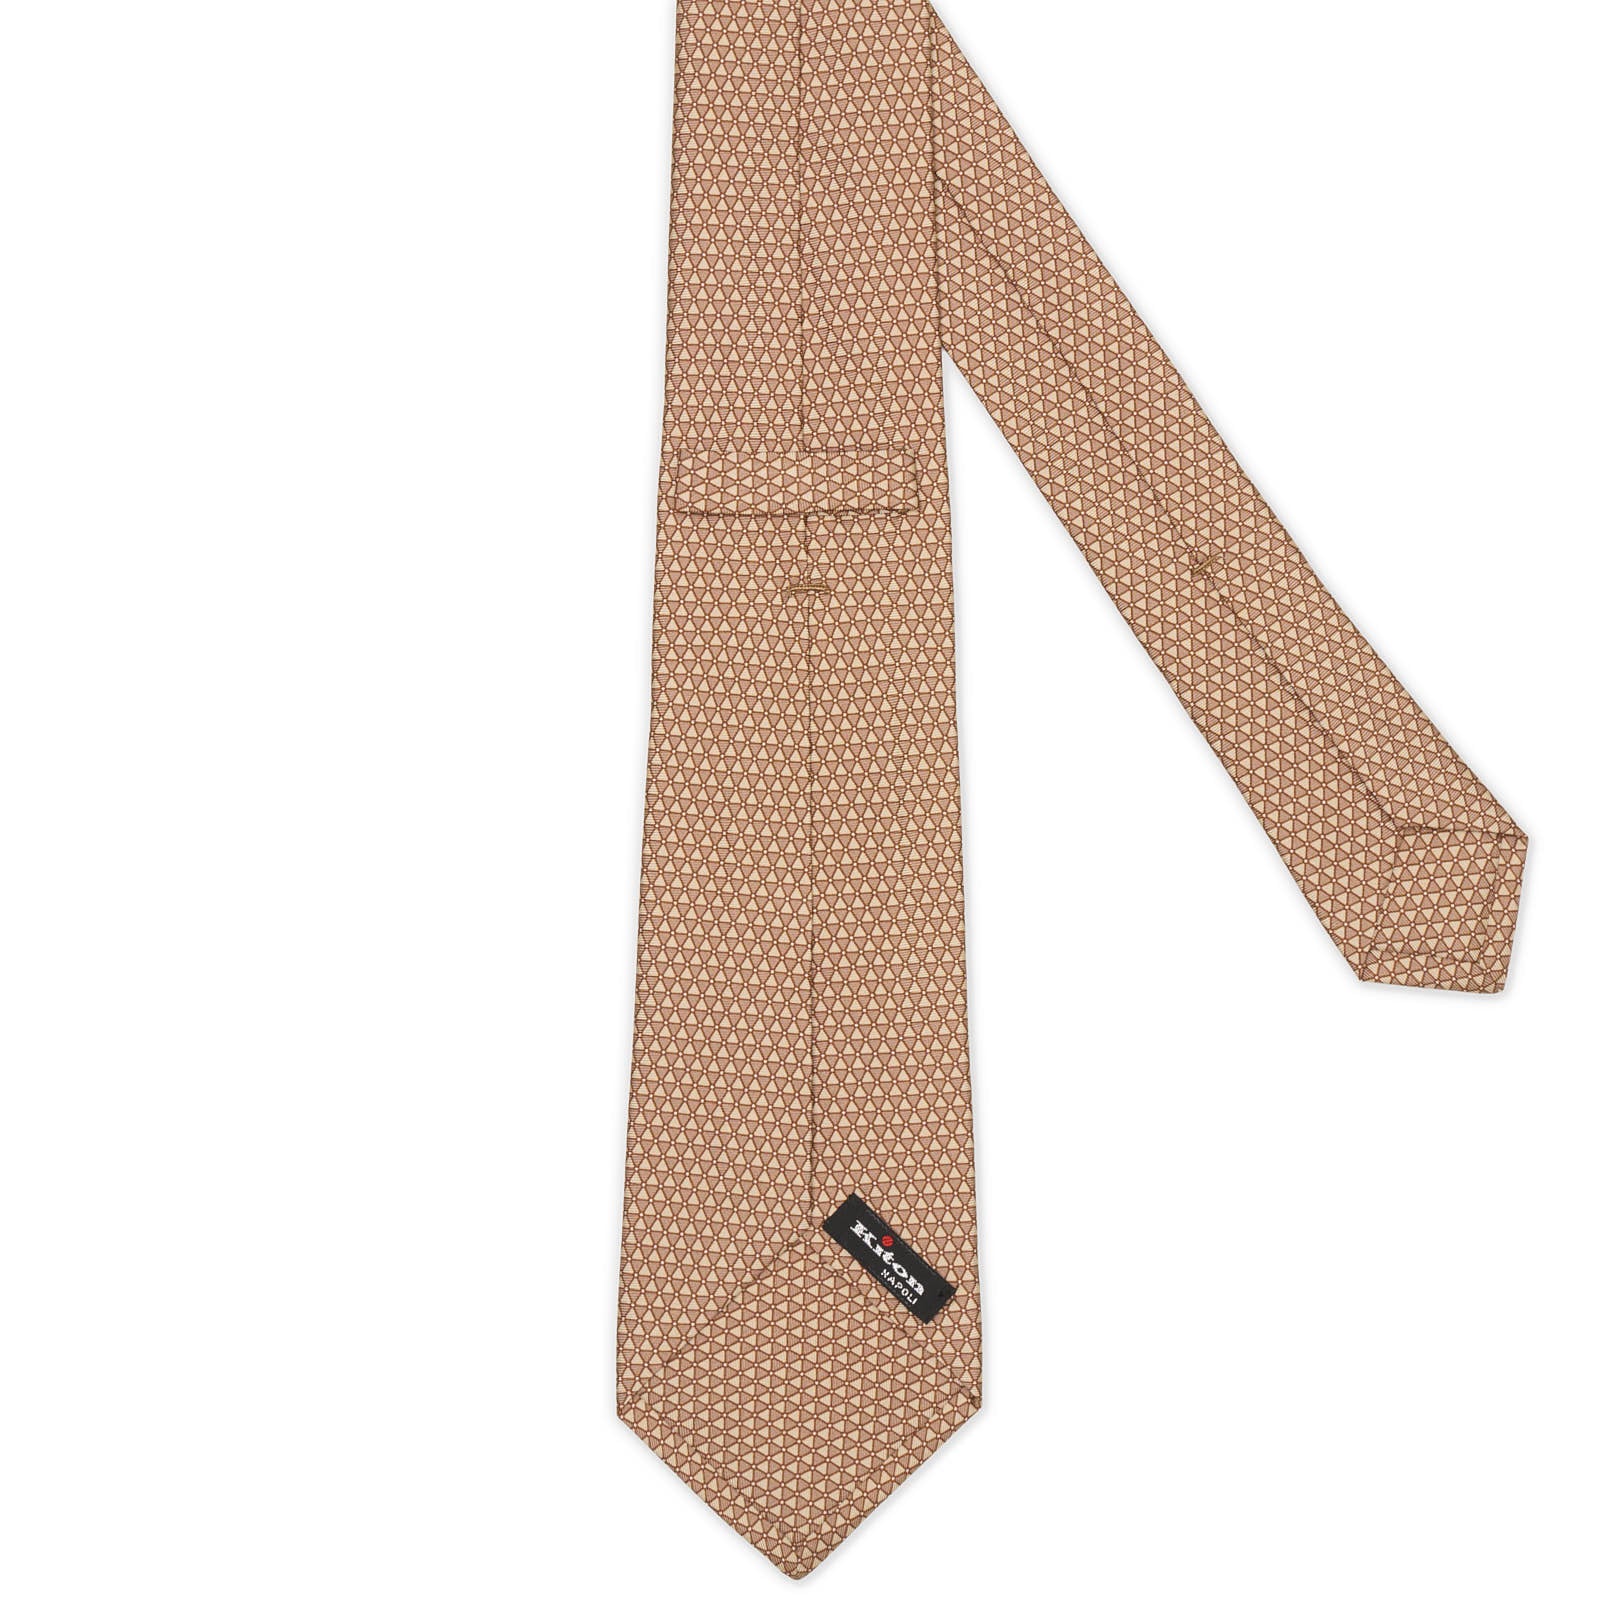 KITON Light Brown Geometric Seven Fold Silk Tie NEW